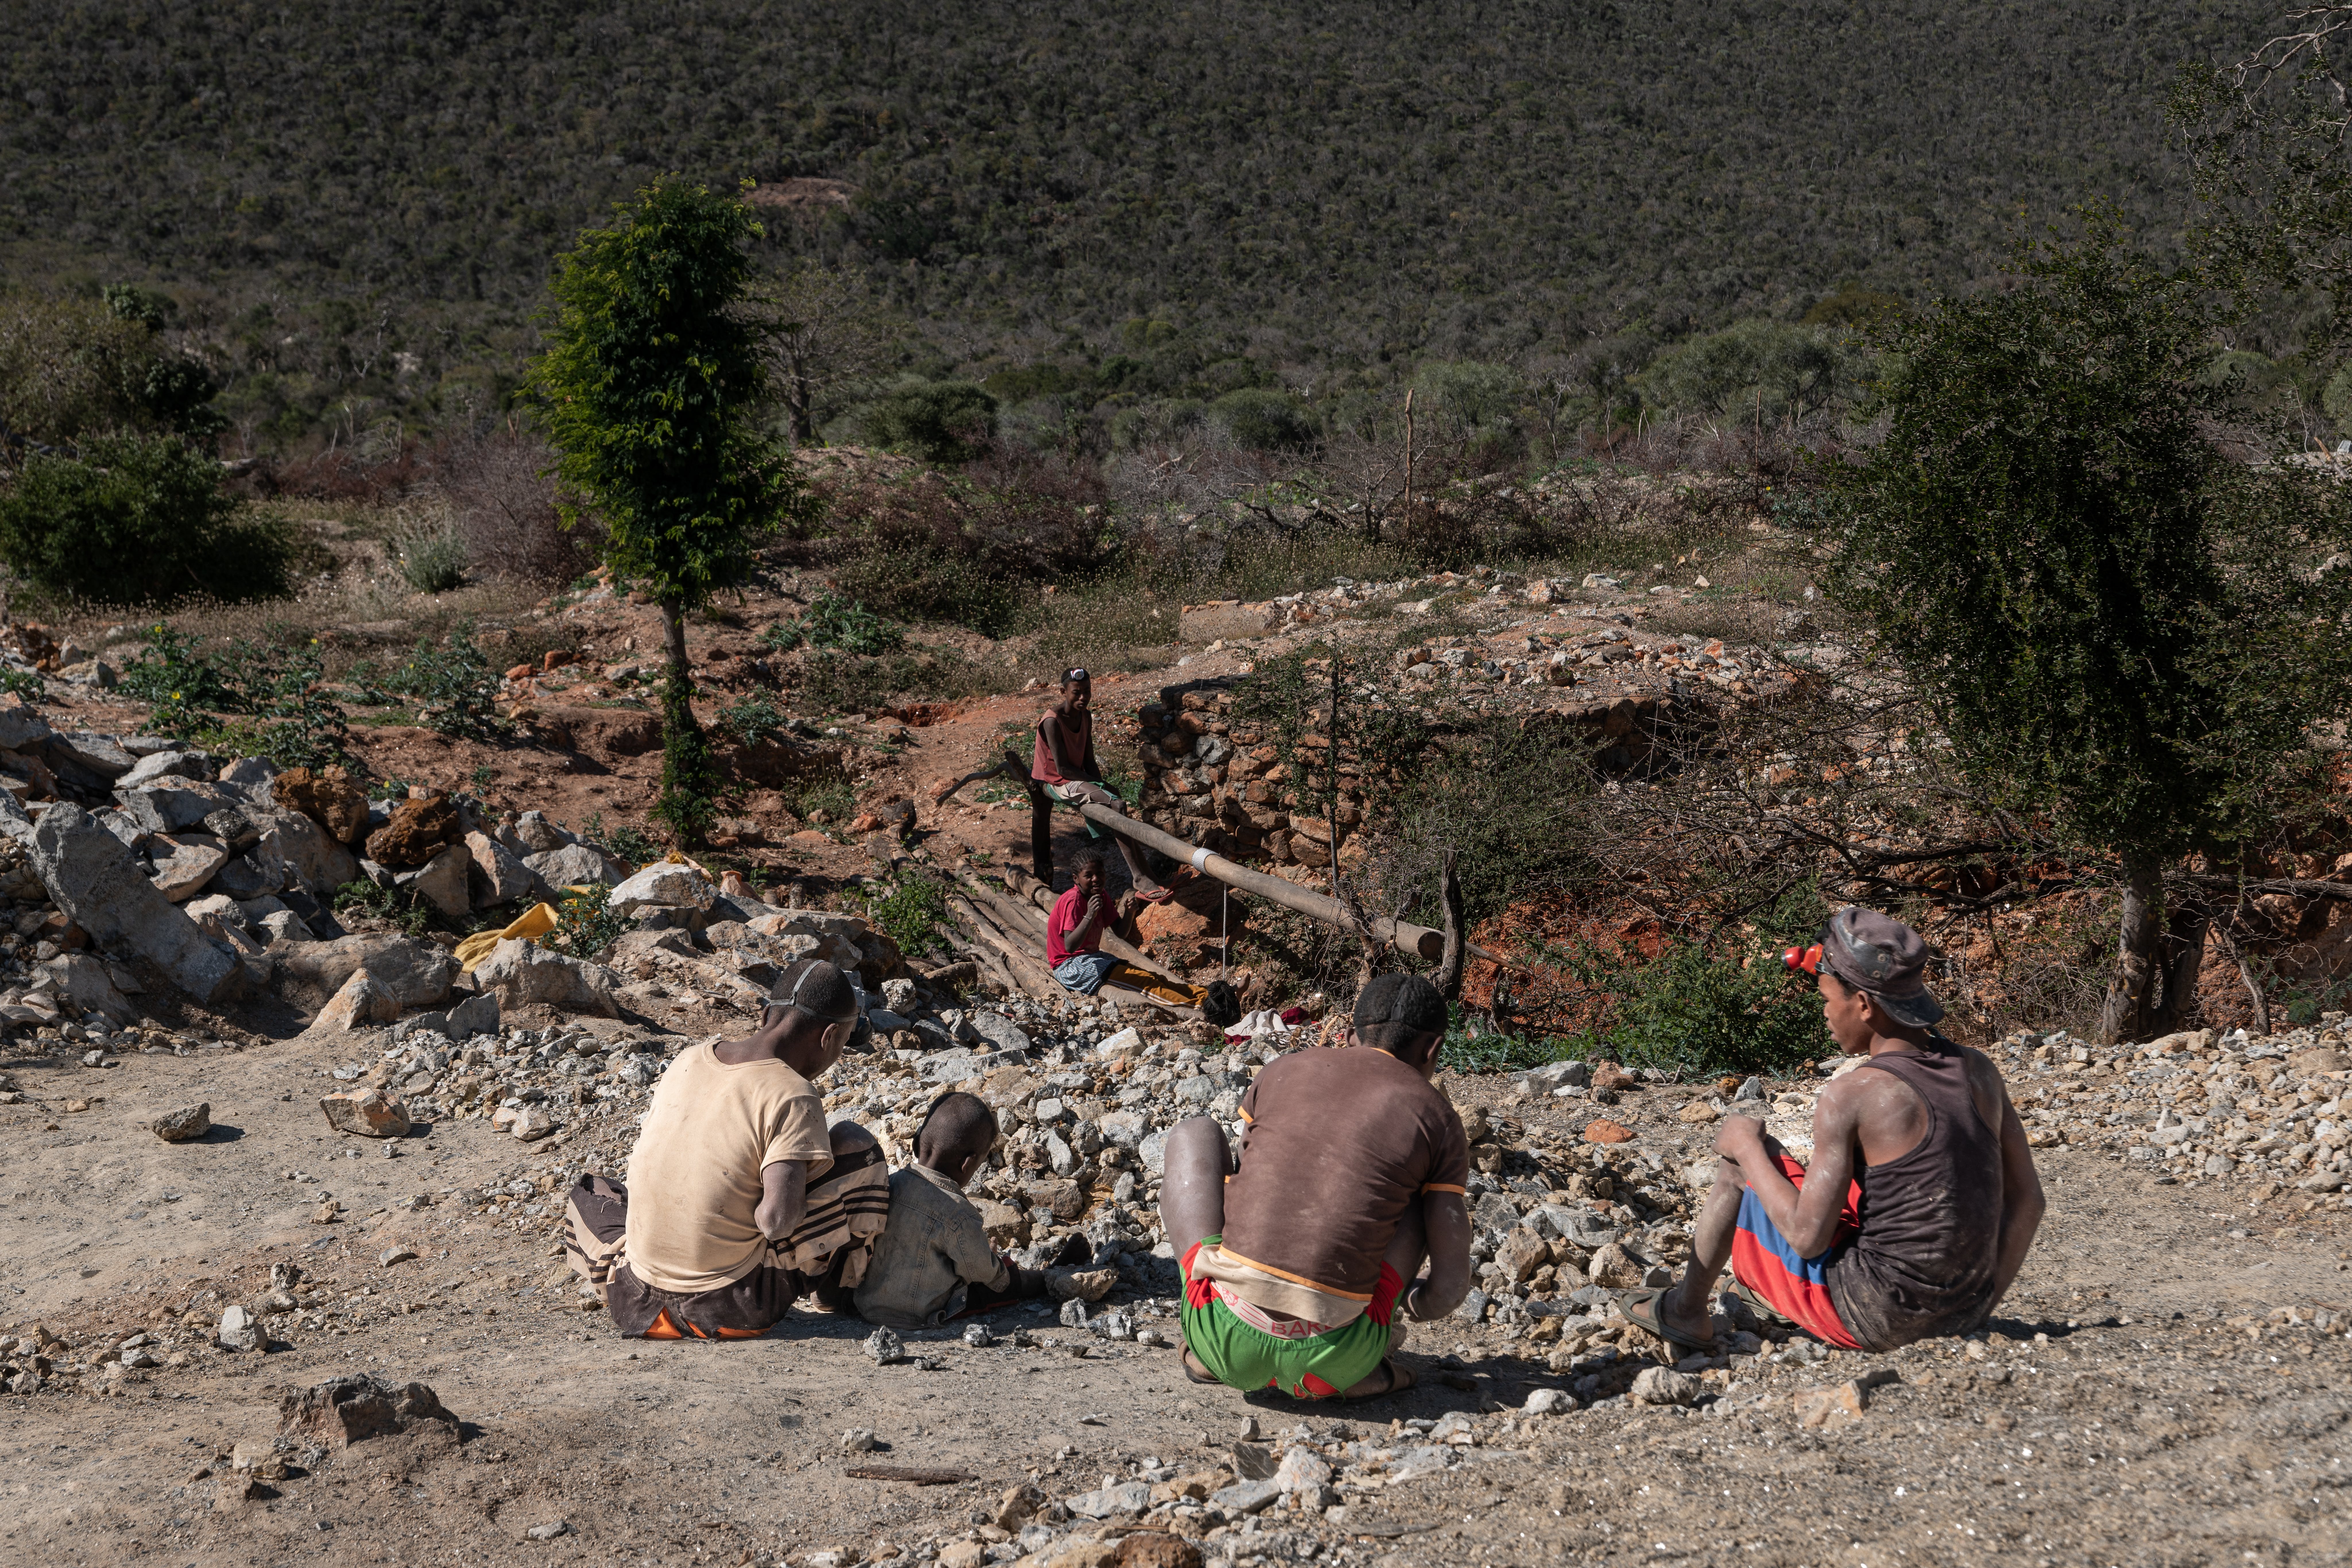 Un gruppo di uomini e bambini riemergono dalle rocce da cui estraggono la mica. La miniera di Vohibola, nella regione di Anosy in Madagascar, è situata 25 chilometri a nord di Amboasary-sud.